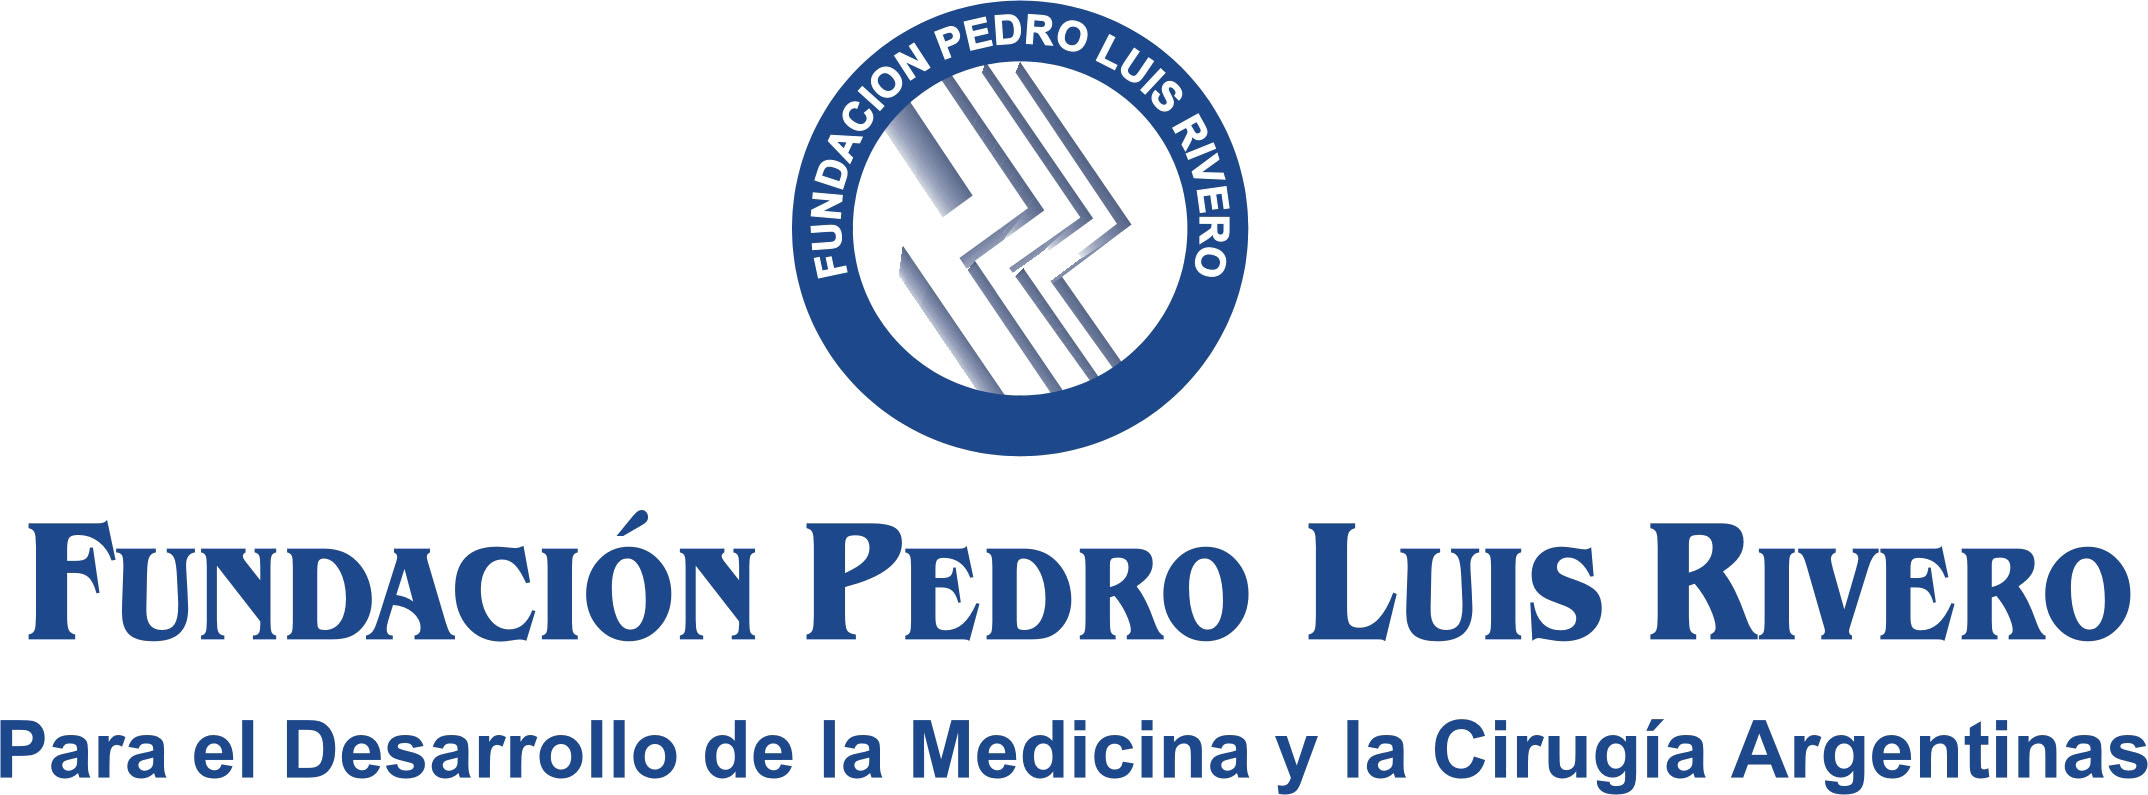 Fundación Pedro Luis Rivero